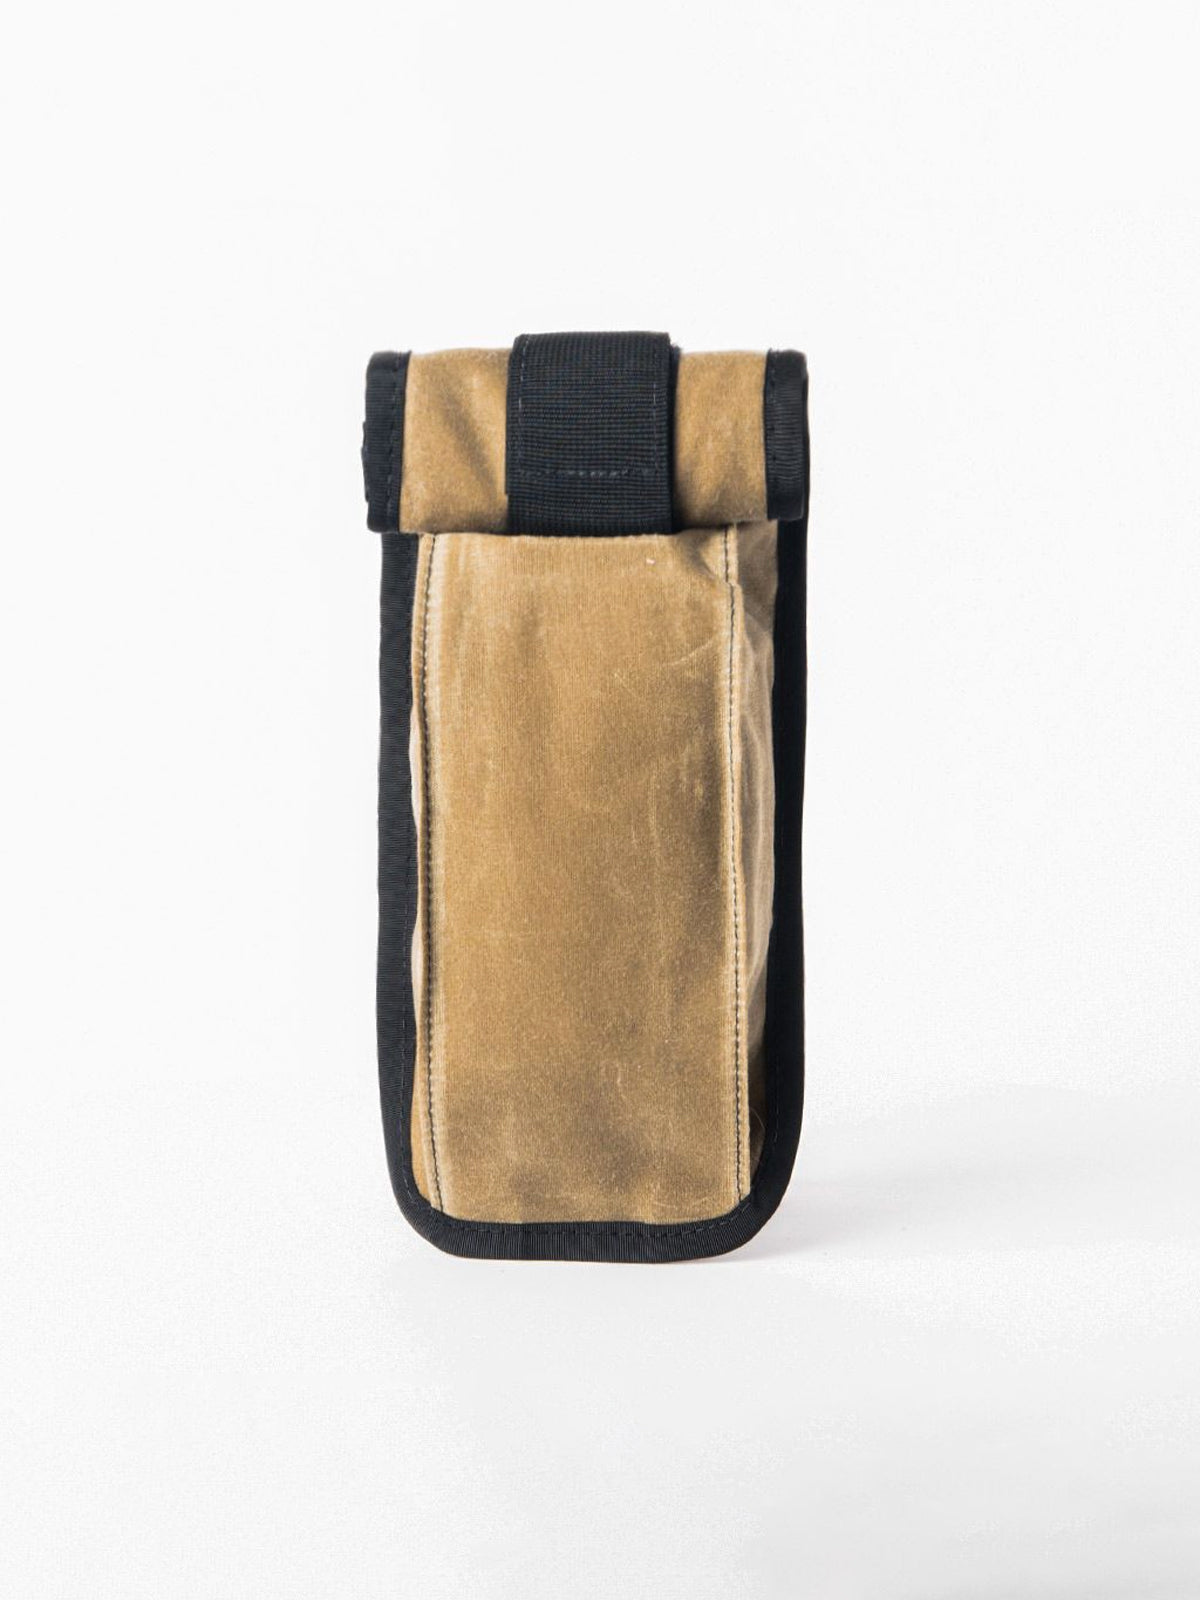 Arkiv Vertical Rolltop Pocket från Mission Workshop - vädertåliga väskor och tekniska kläder - San Francisco och Los Angeles - byggda för att tåla - garanterade för alltid